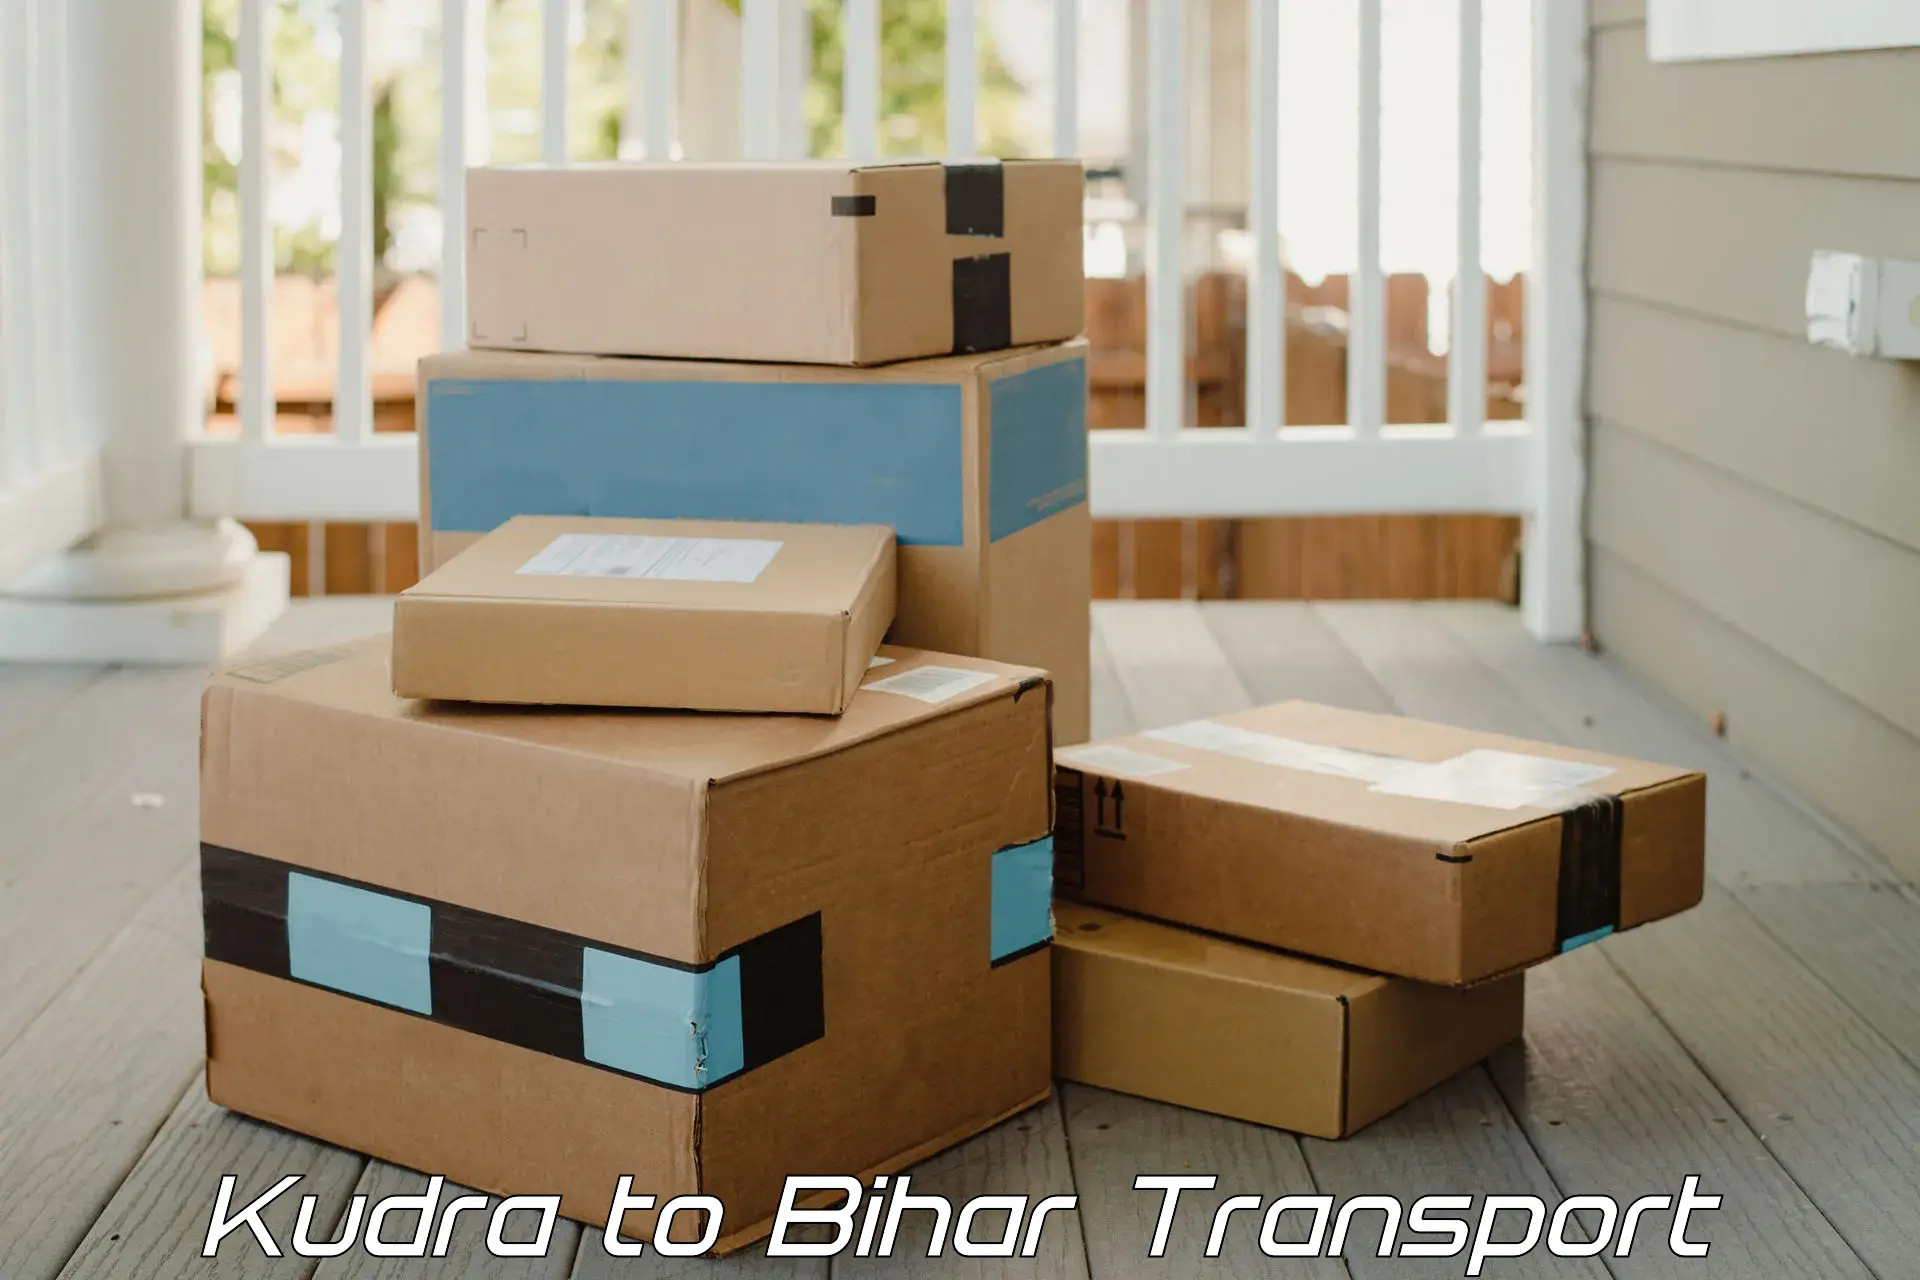 Lorry transport service Kudra to Kumarkhand